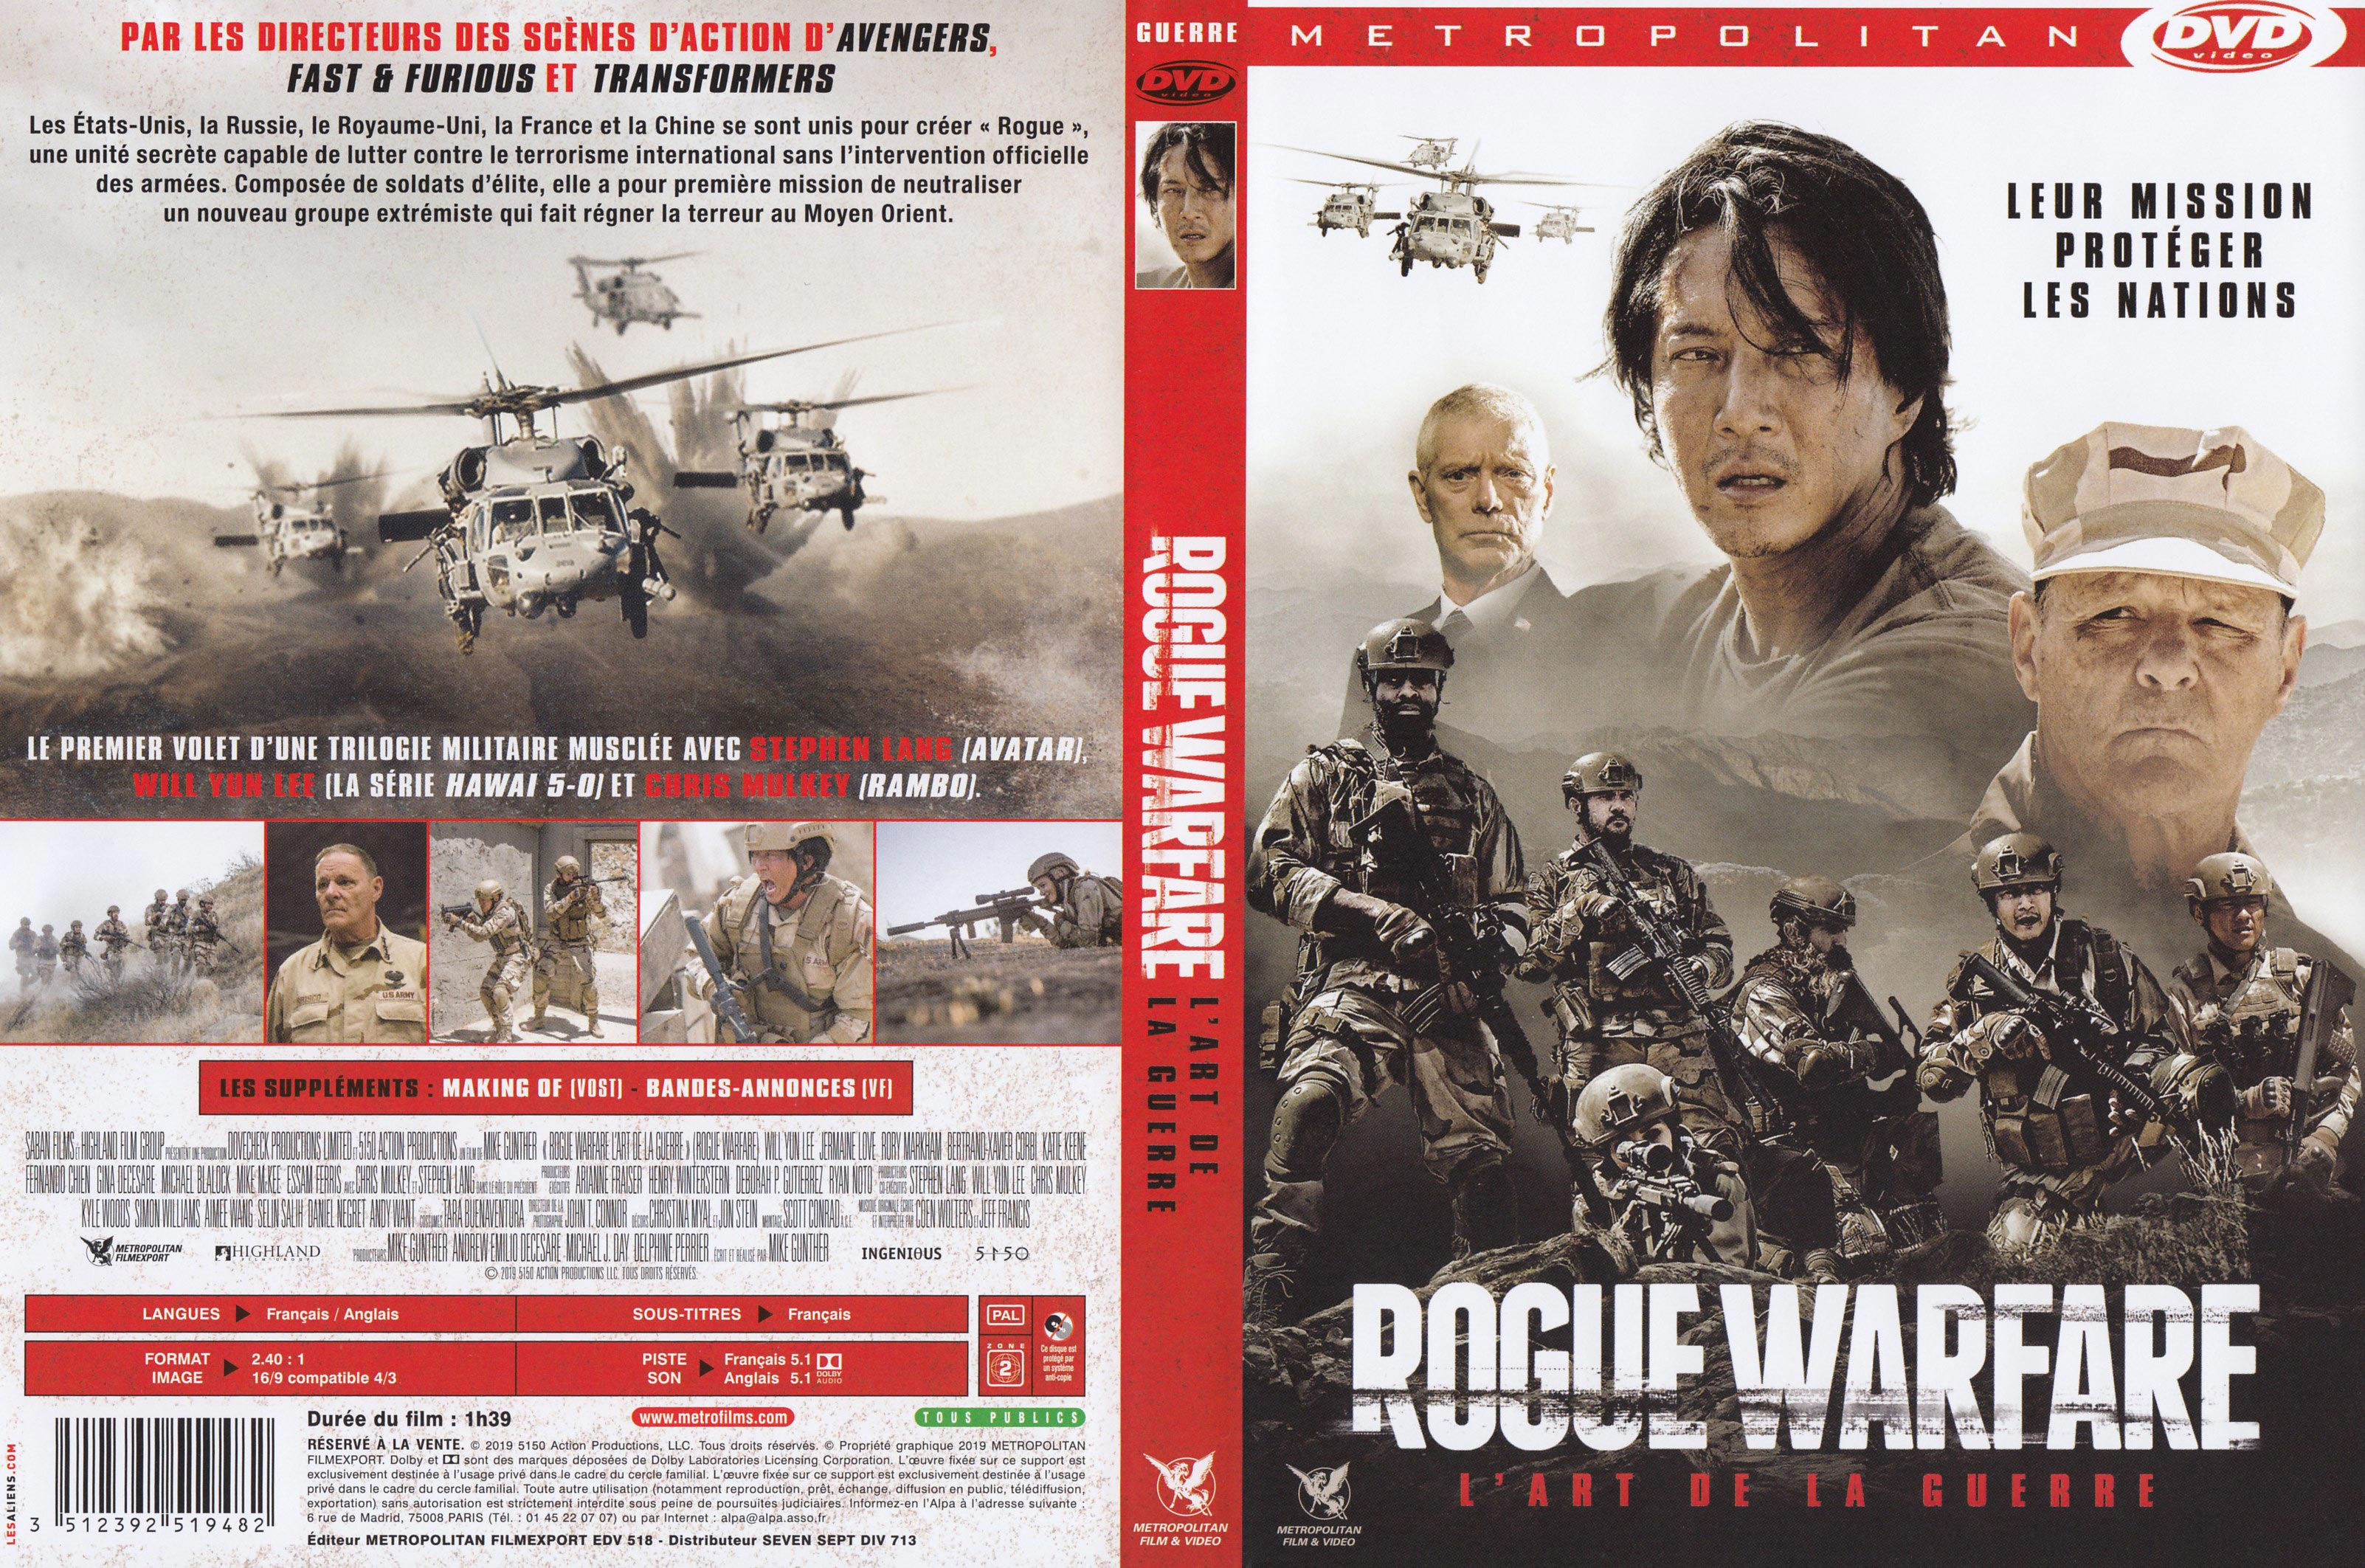 Jaquette DVD Rogue warfare - L